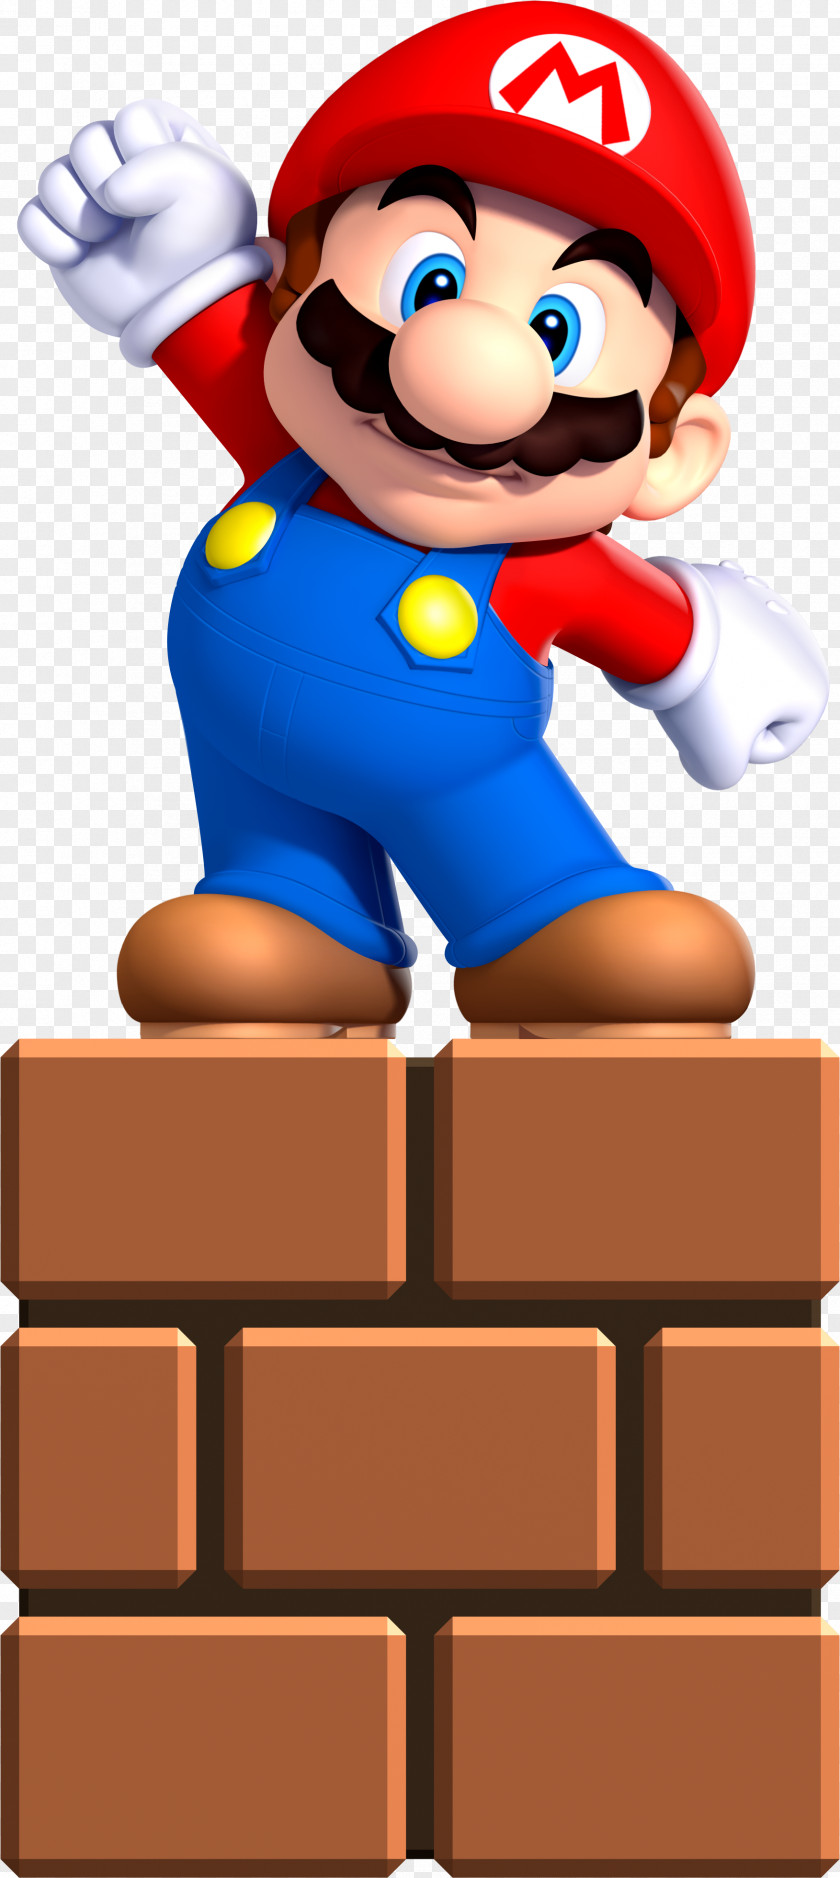 Mario New Super Bros. U PNG